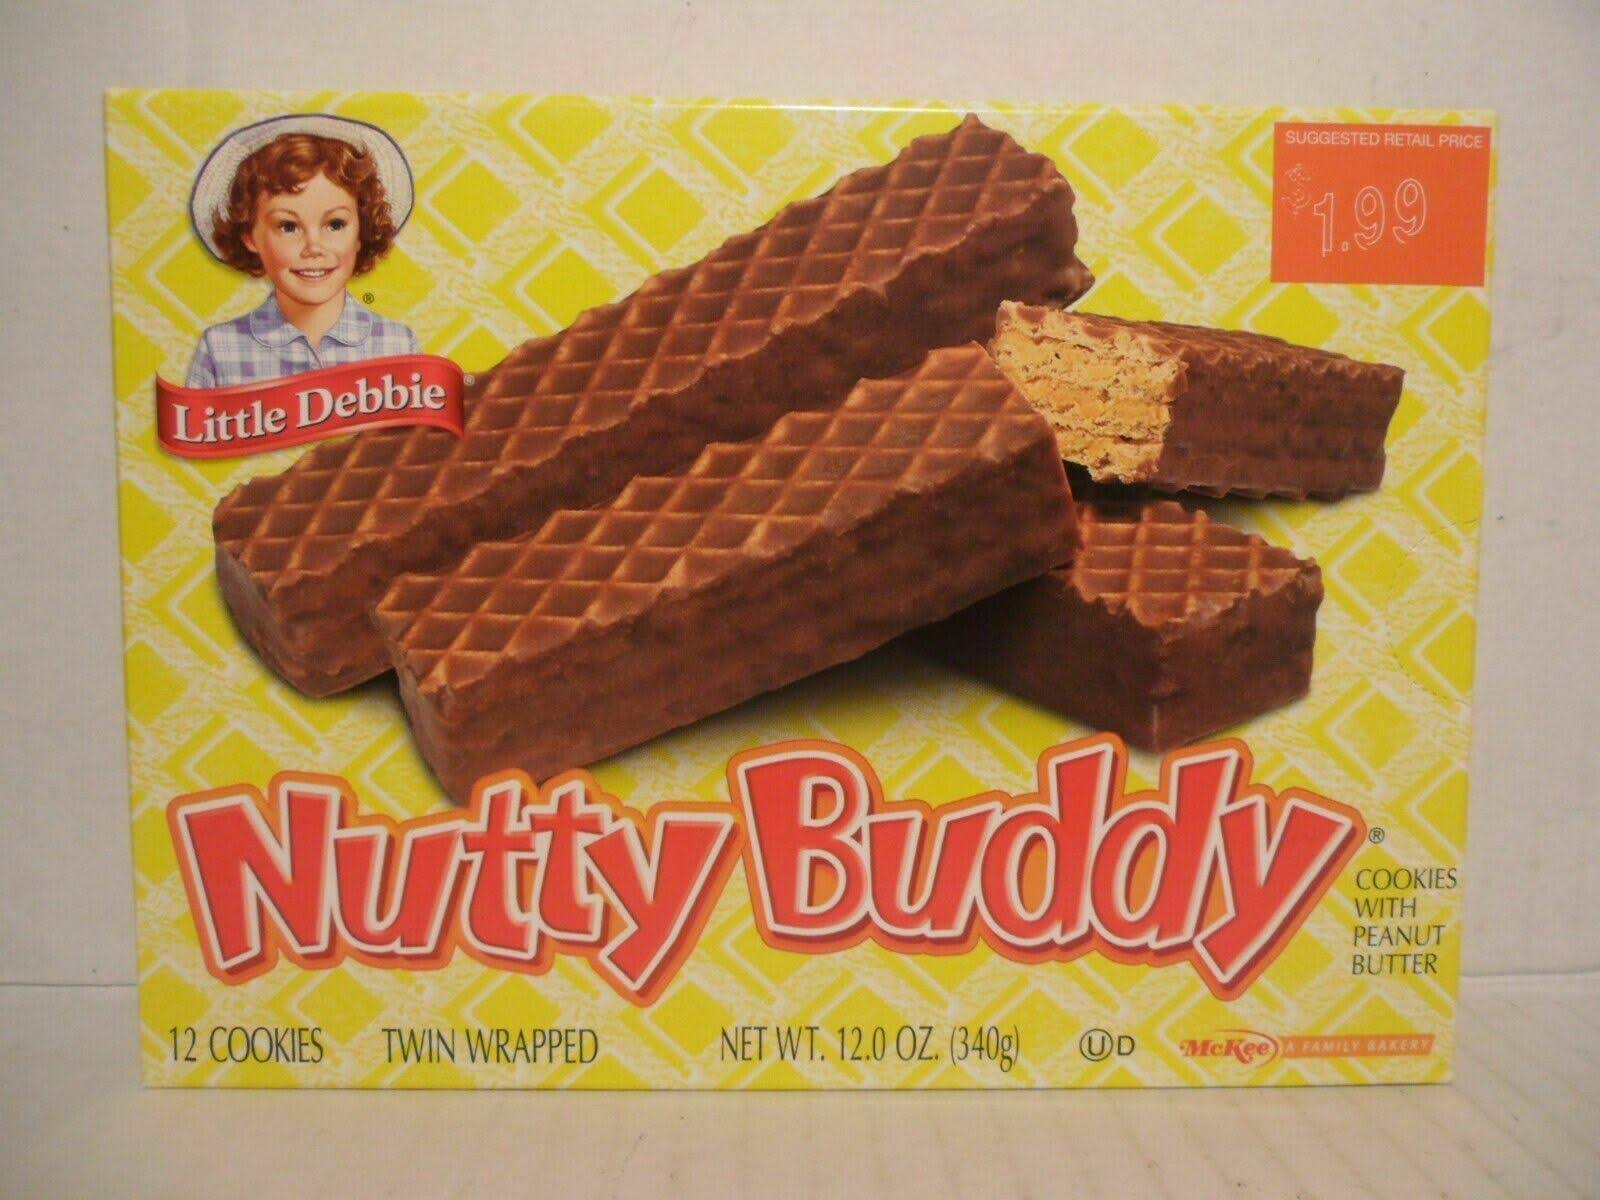 Little Debbie Nutty Bars - 12 Bars, 340g